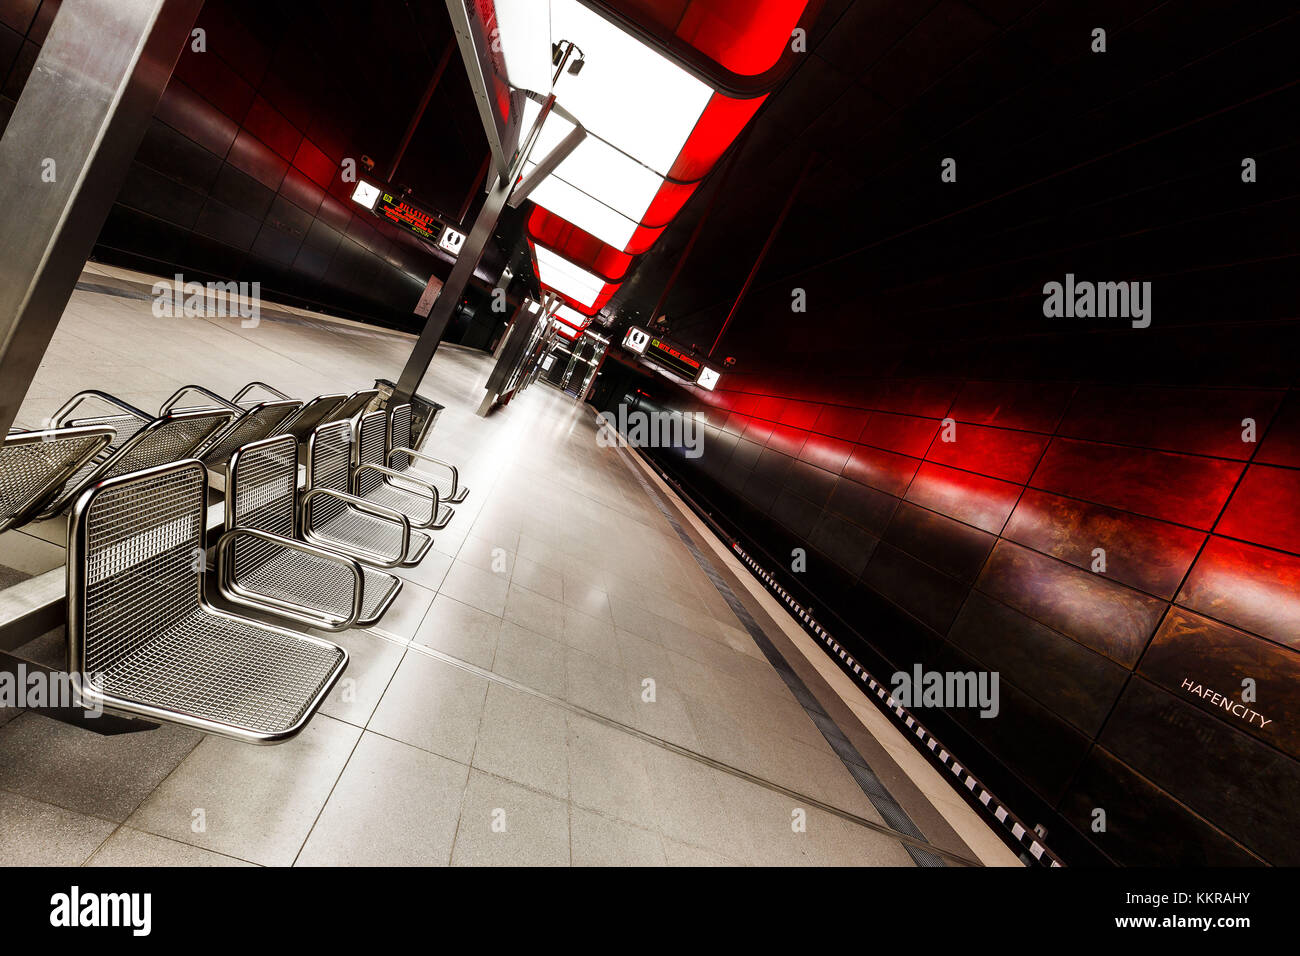 La station de métro U4 moderne Université de Hambourg près de la hafencity avec son impressionnant éclairage à led Banque D'Images